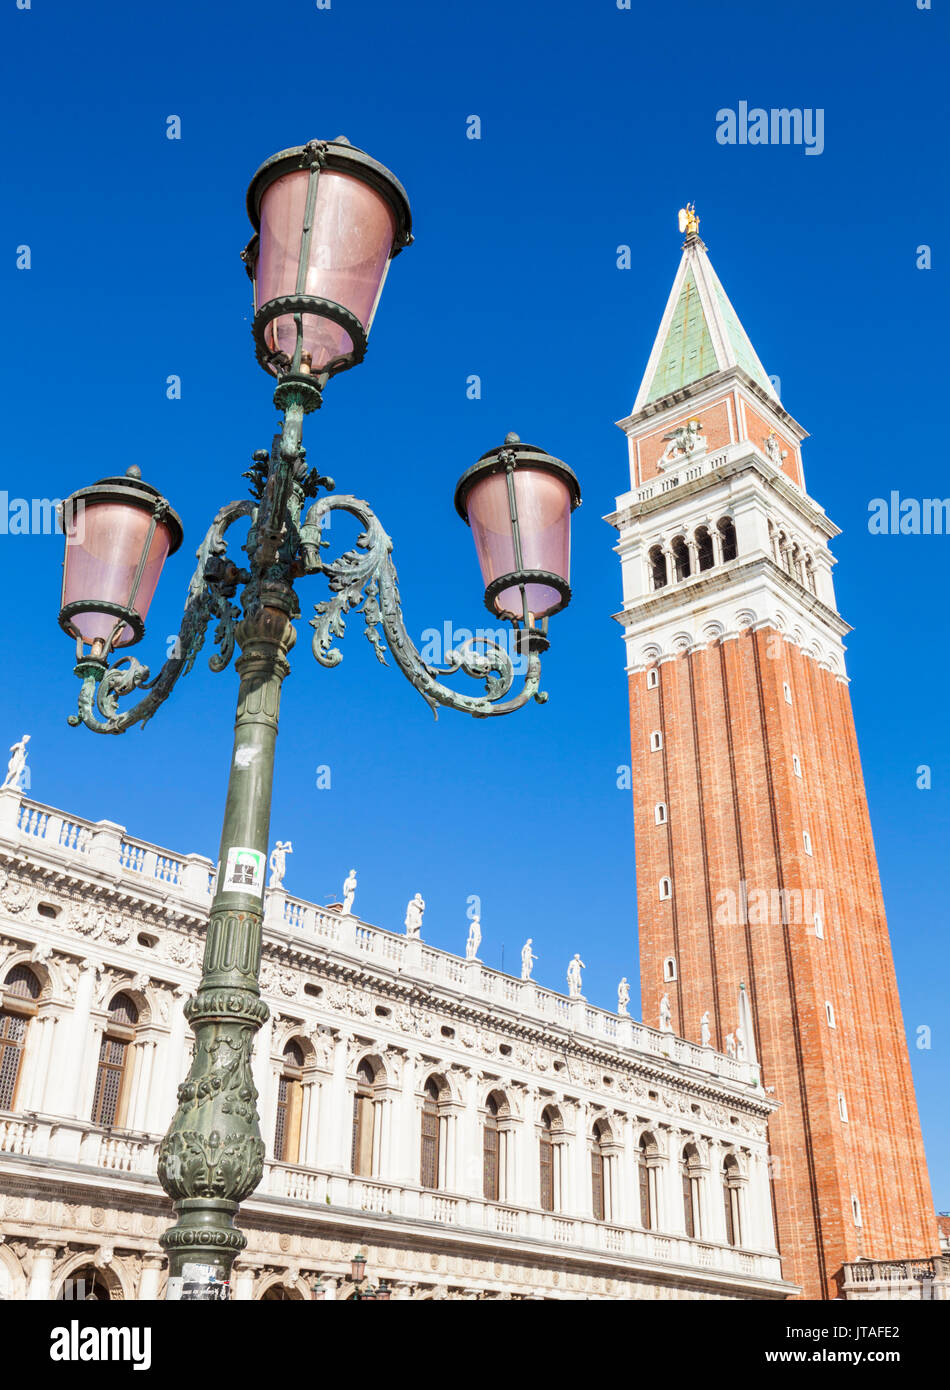 Torre del Campanile, veneziana tradizionale lampada posta, Piazzetta, Piazza San Marco, Venezia, Sito Patrimonio Mondiale dell'UNESCO, Veneto, Italia, Europa Foto Stock